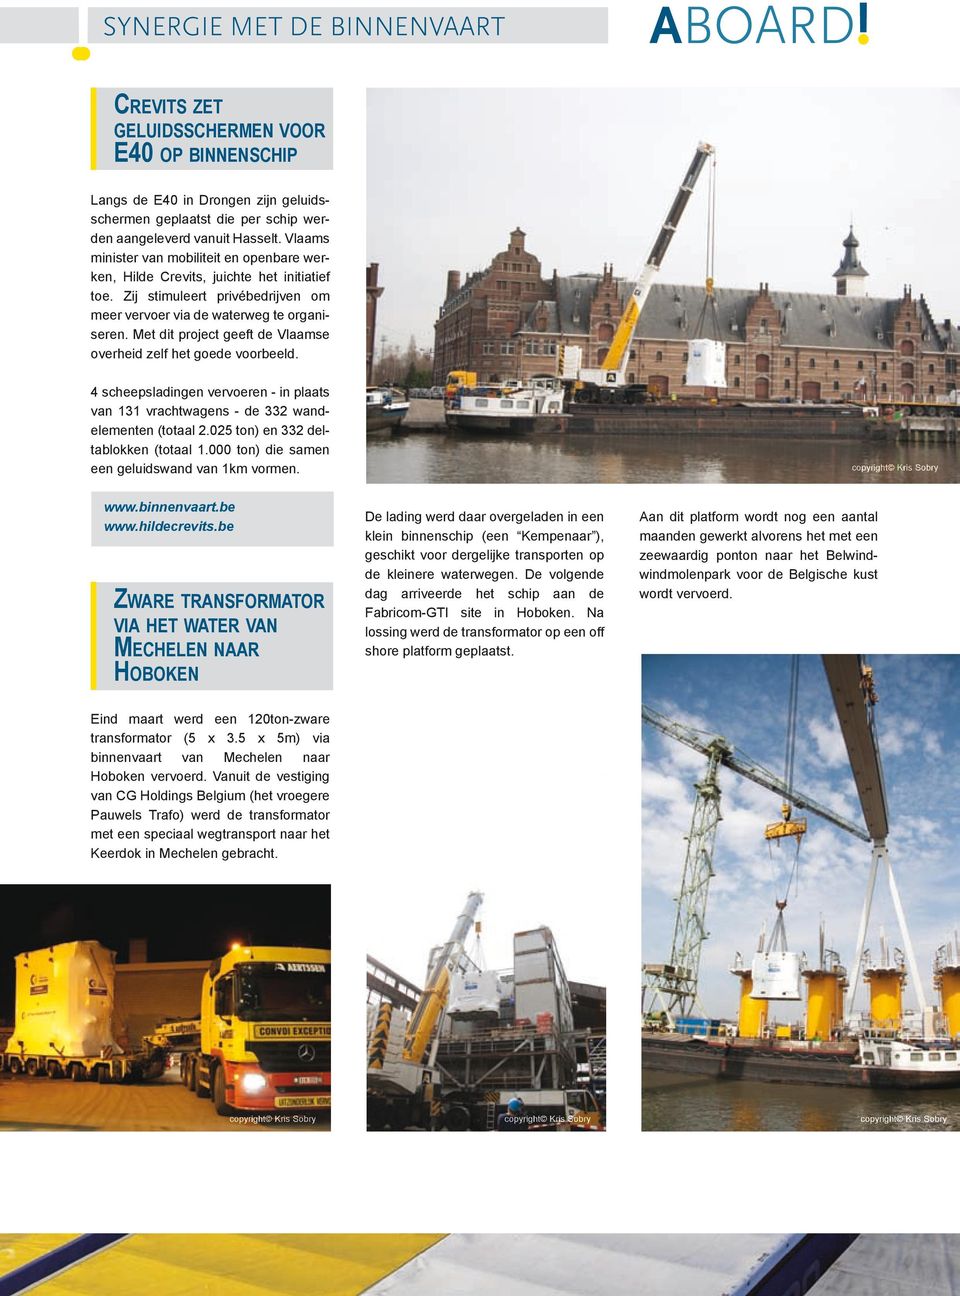 Met dit project geeft de Vlaamse overheid zelf het goede voorbeeld. 4 scheepsladingen vervoeren - in plaats van 131 vrachtwagens - de 332 wandelementen (totaal 2.